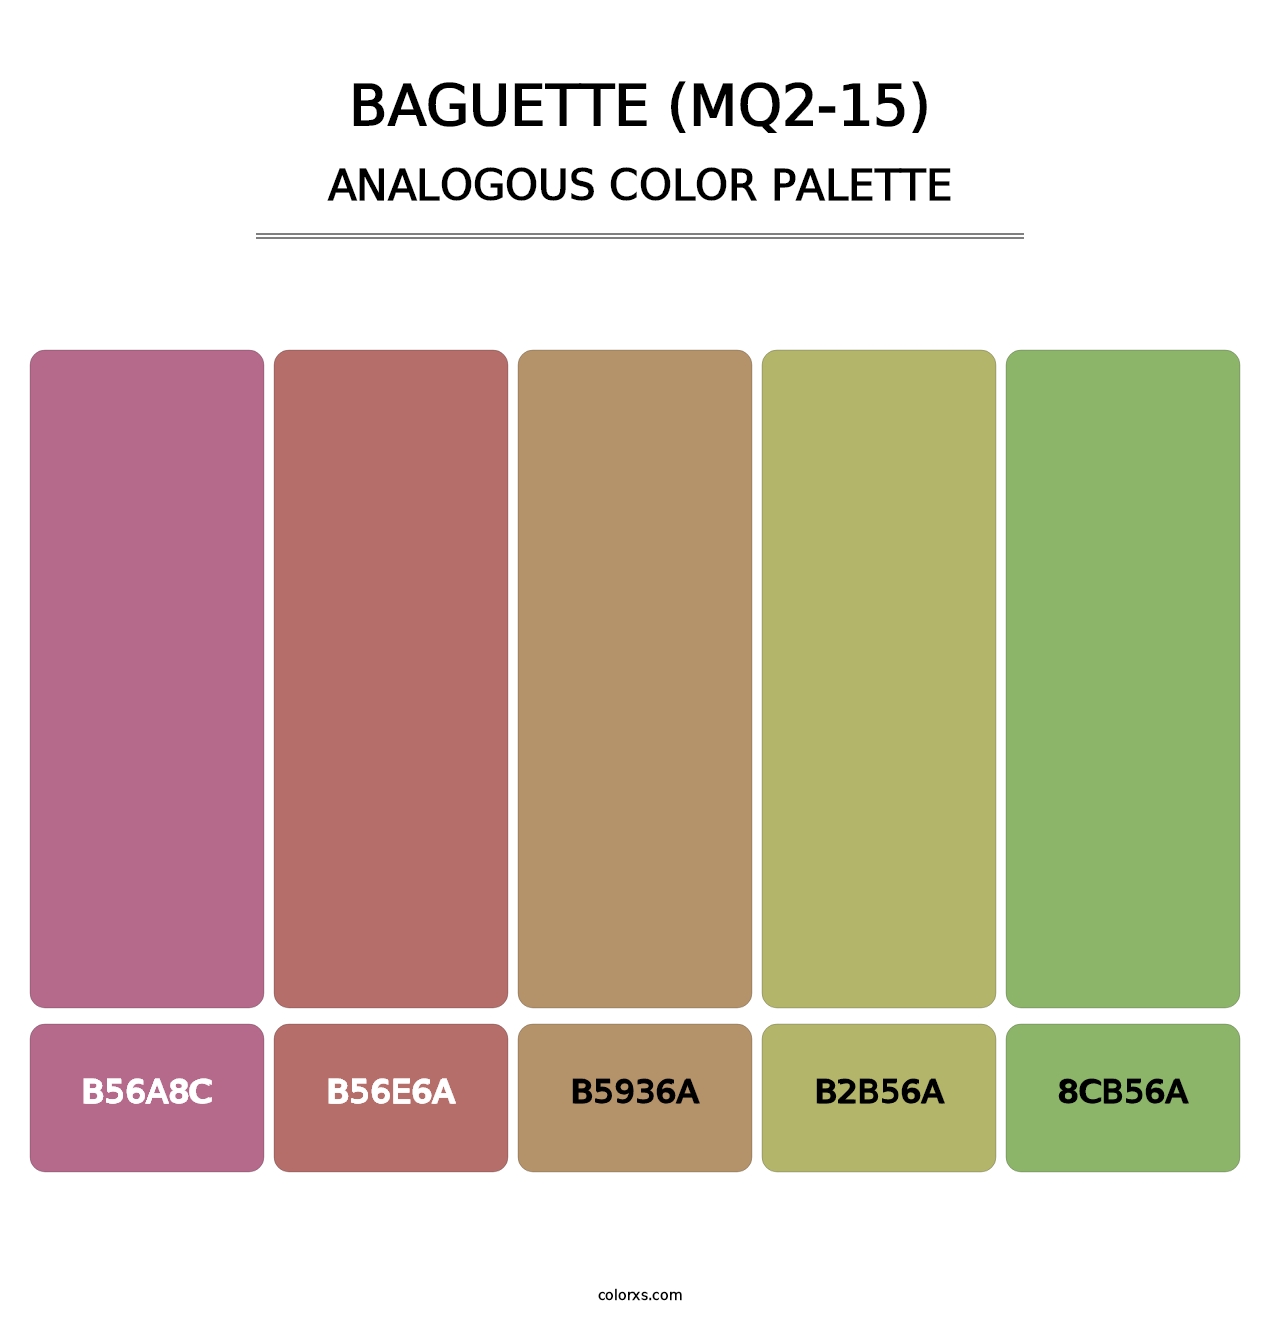 Baguette (MQ2-15) - Analogous Color Palette